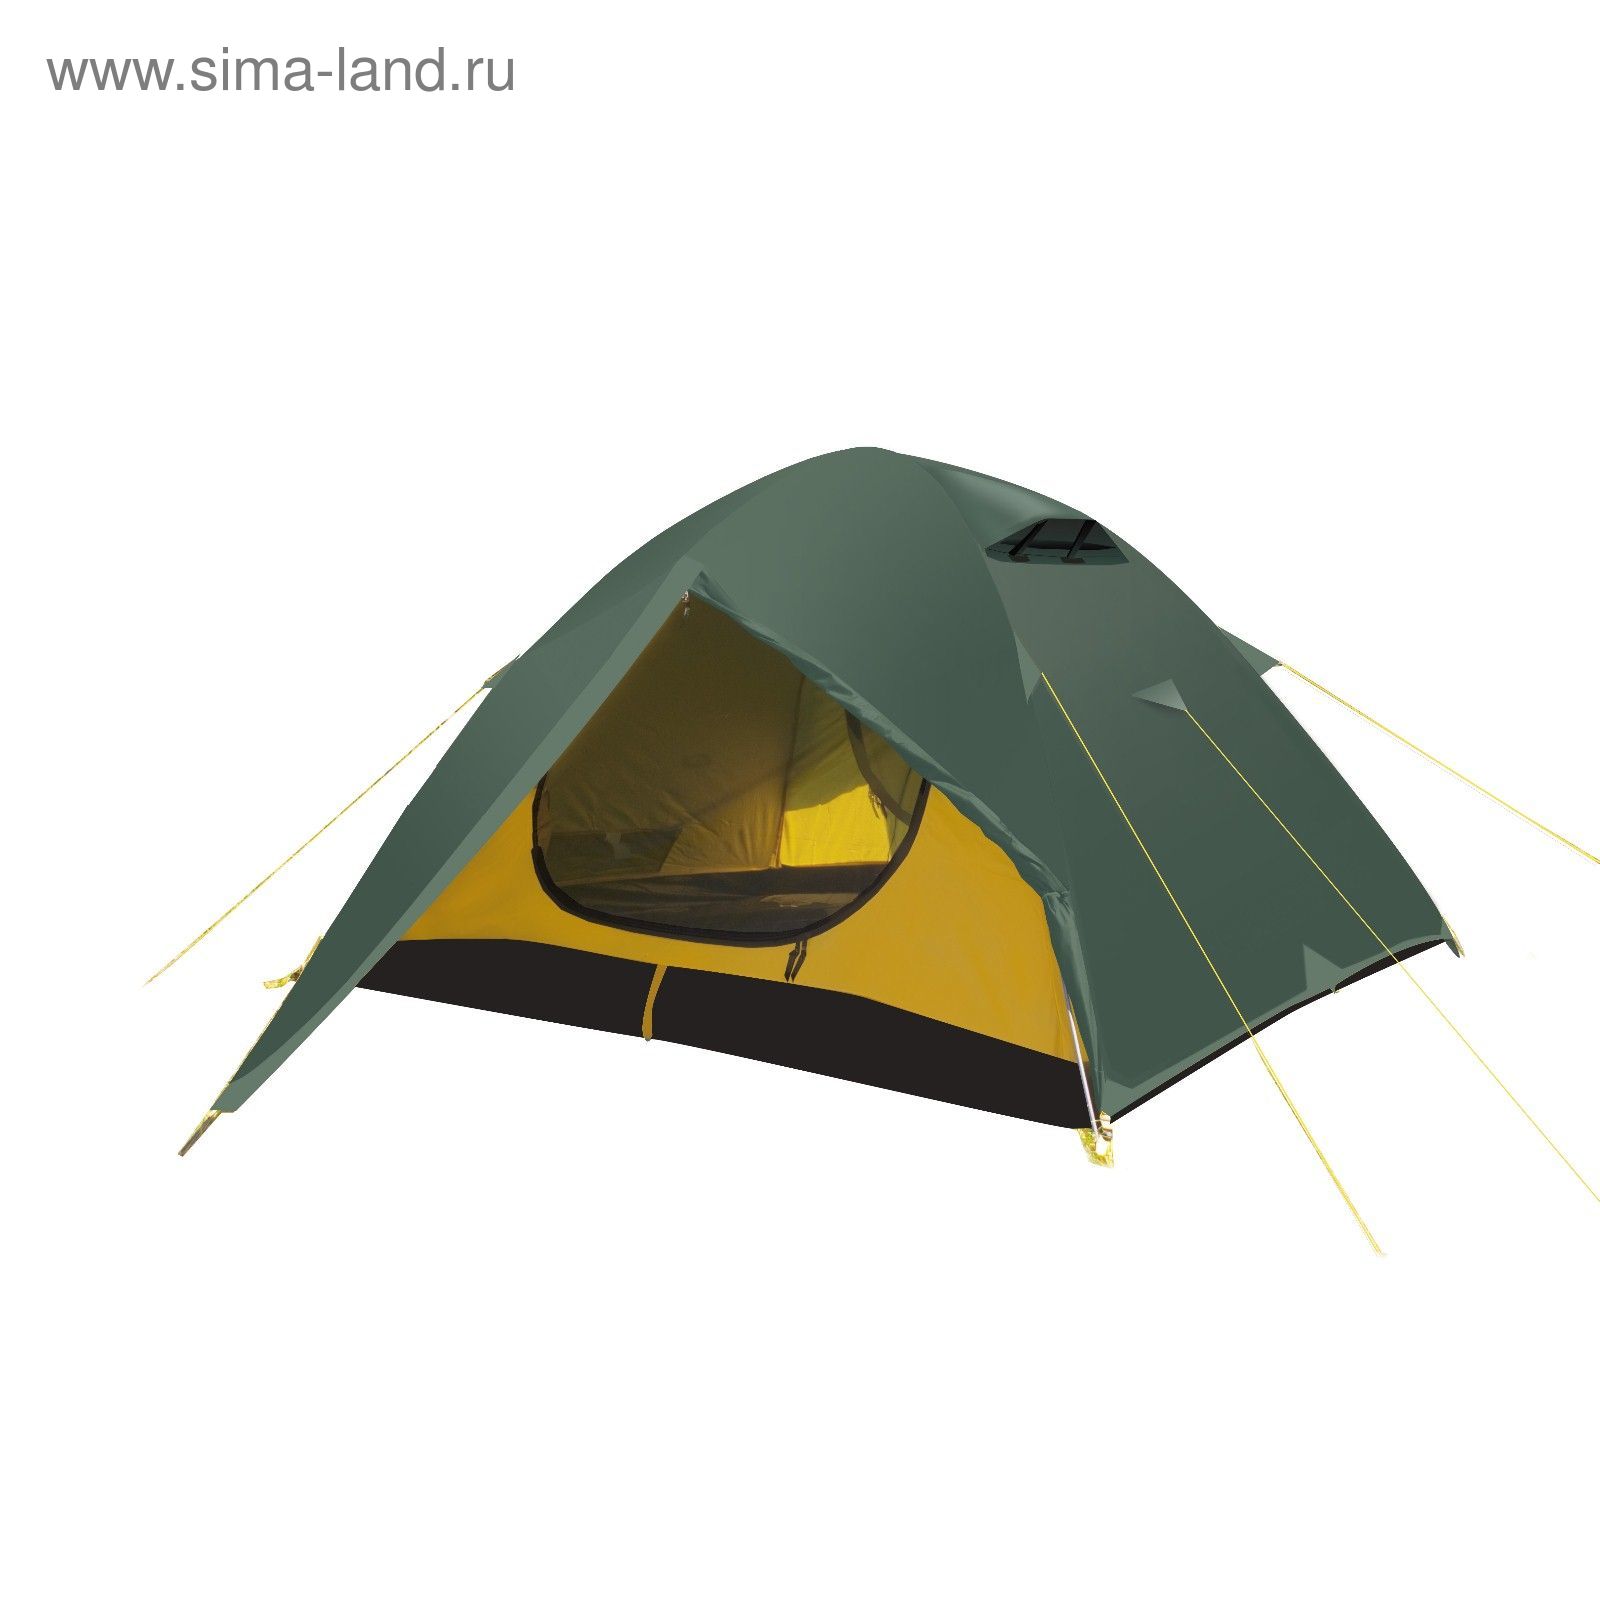 Палатка, серия "Trekking" Cloud 2, зеленая, двухместная